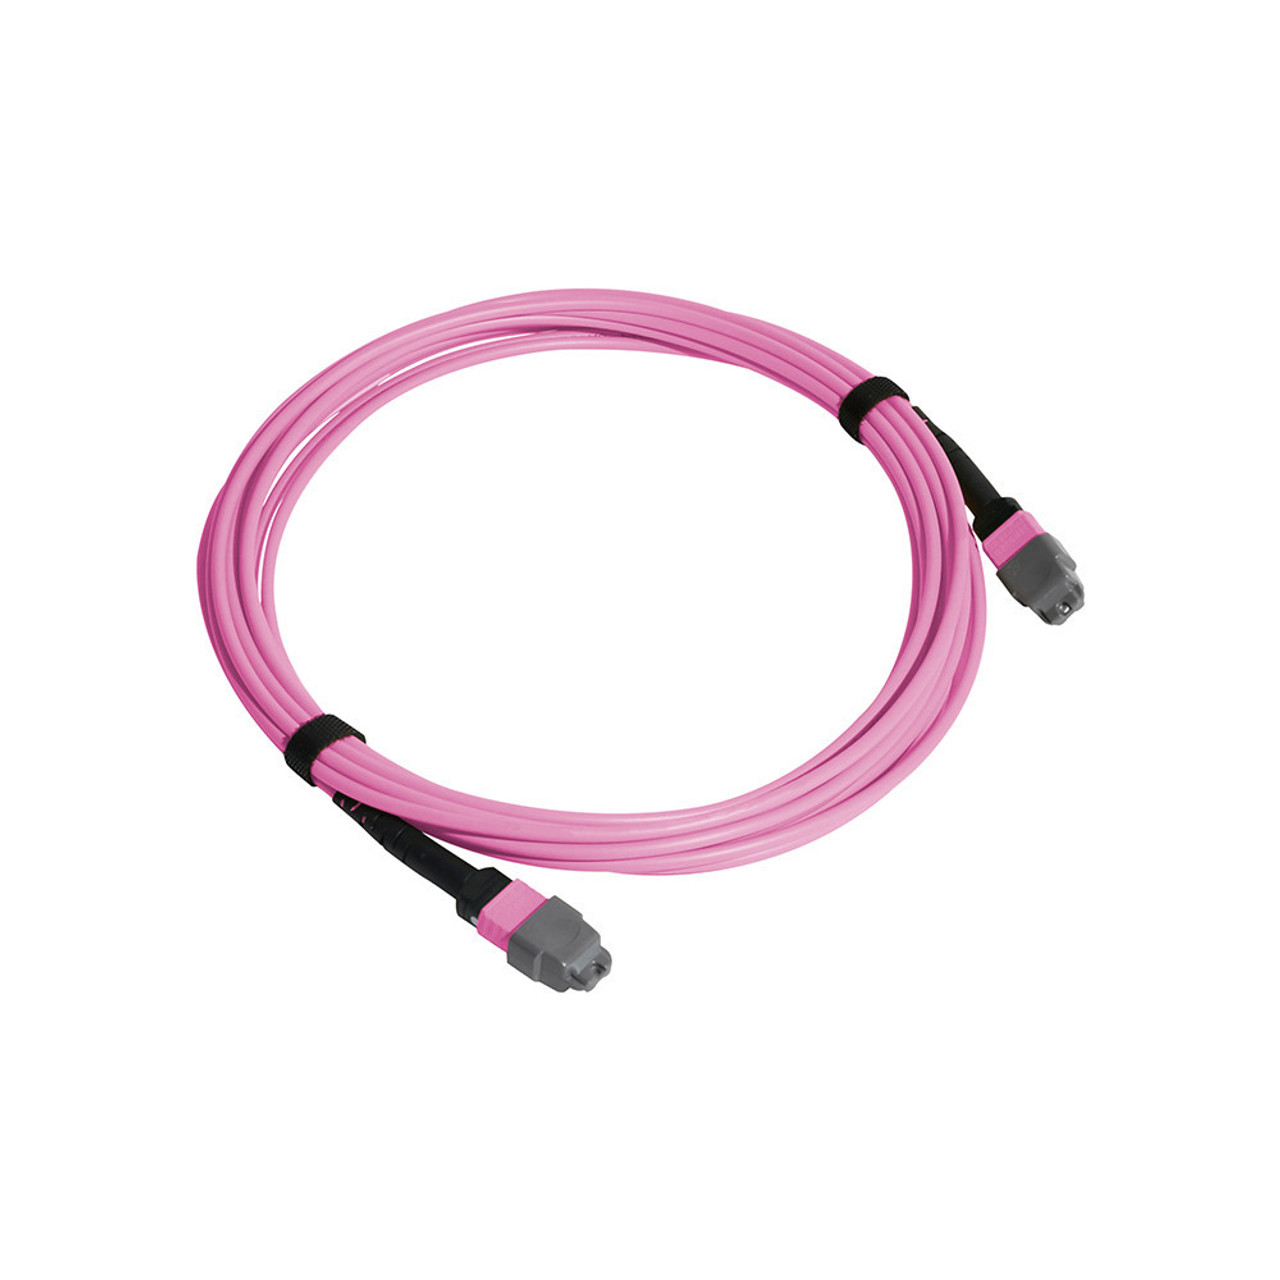 Pink Micro Cord - 125 Feet